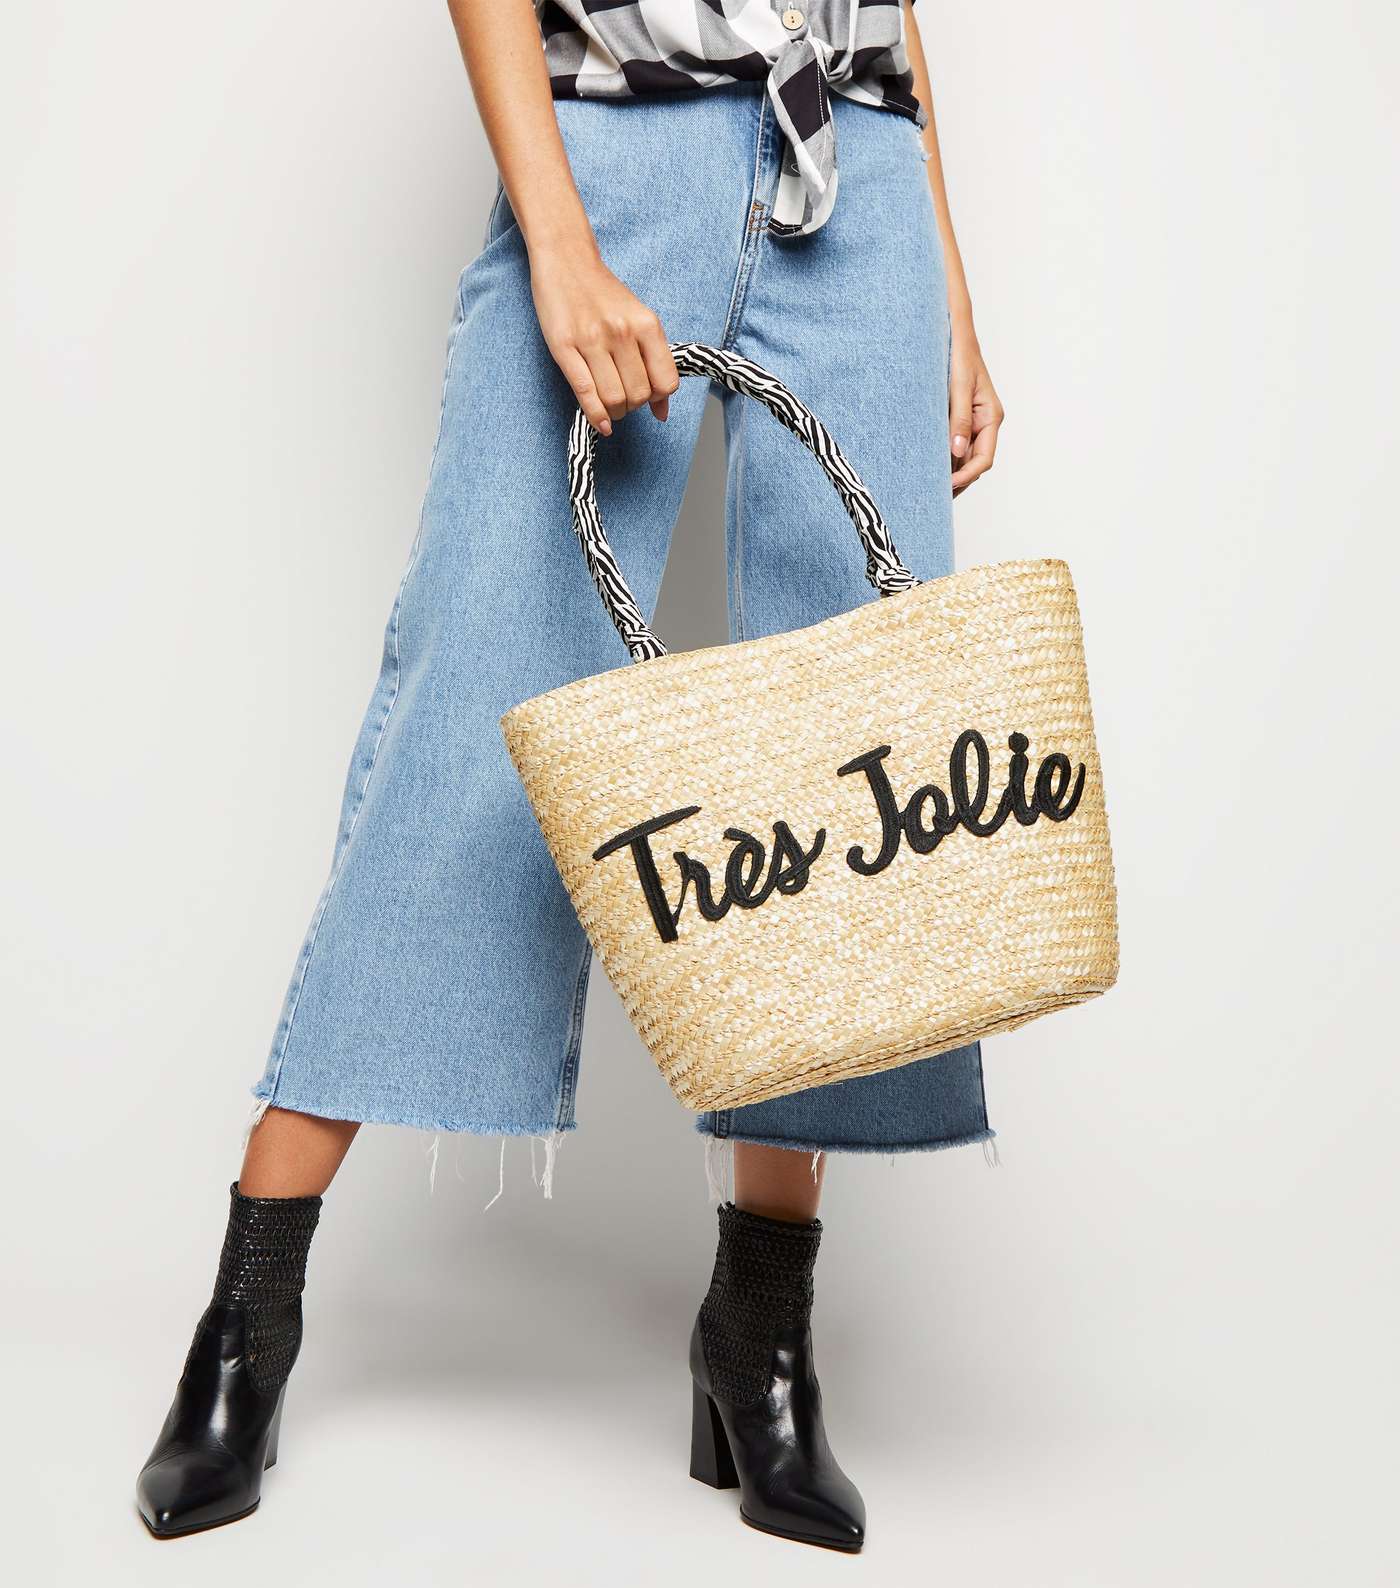 Stone Woven Straw Effect Trés Jolie Slogan Tote Bag Image 2